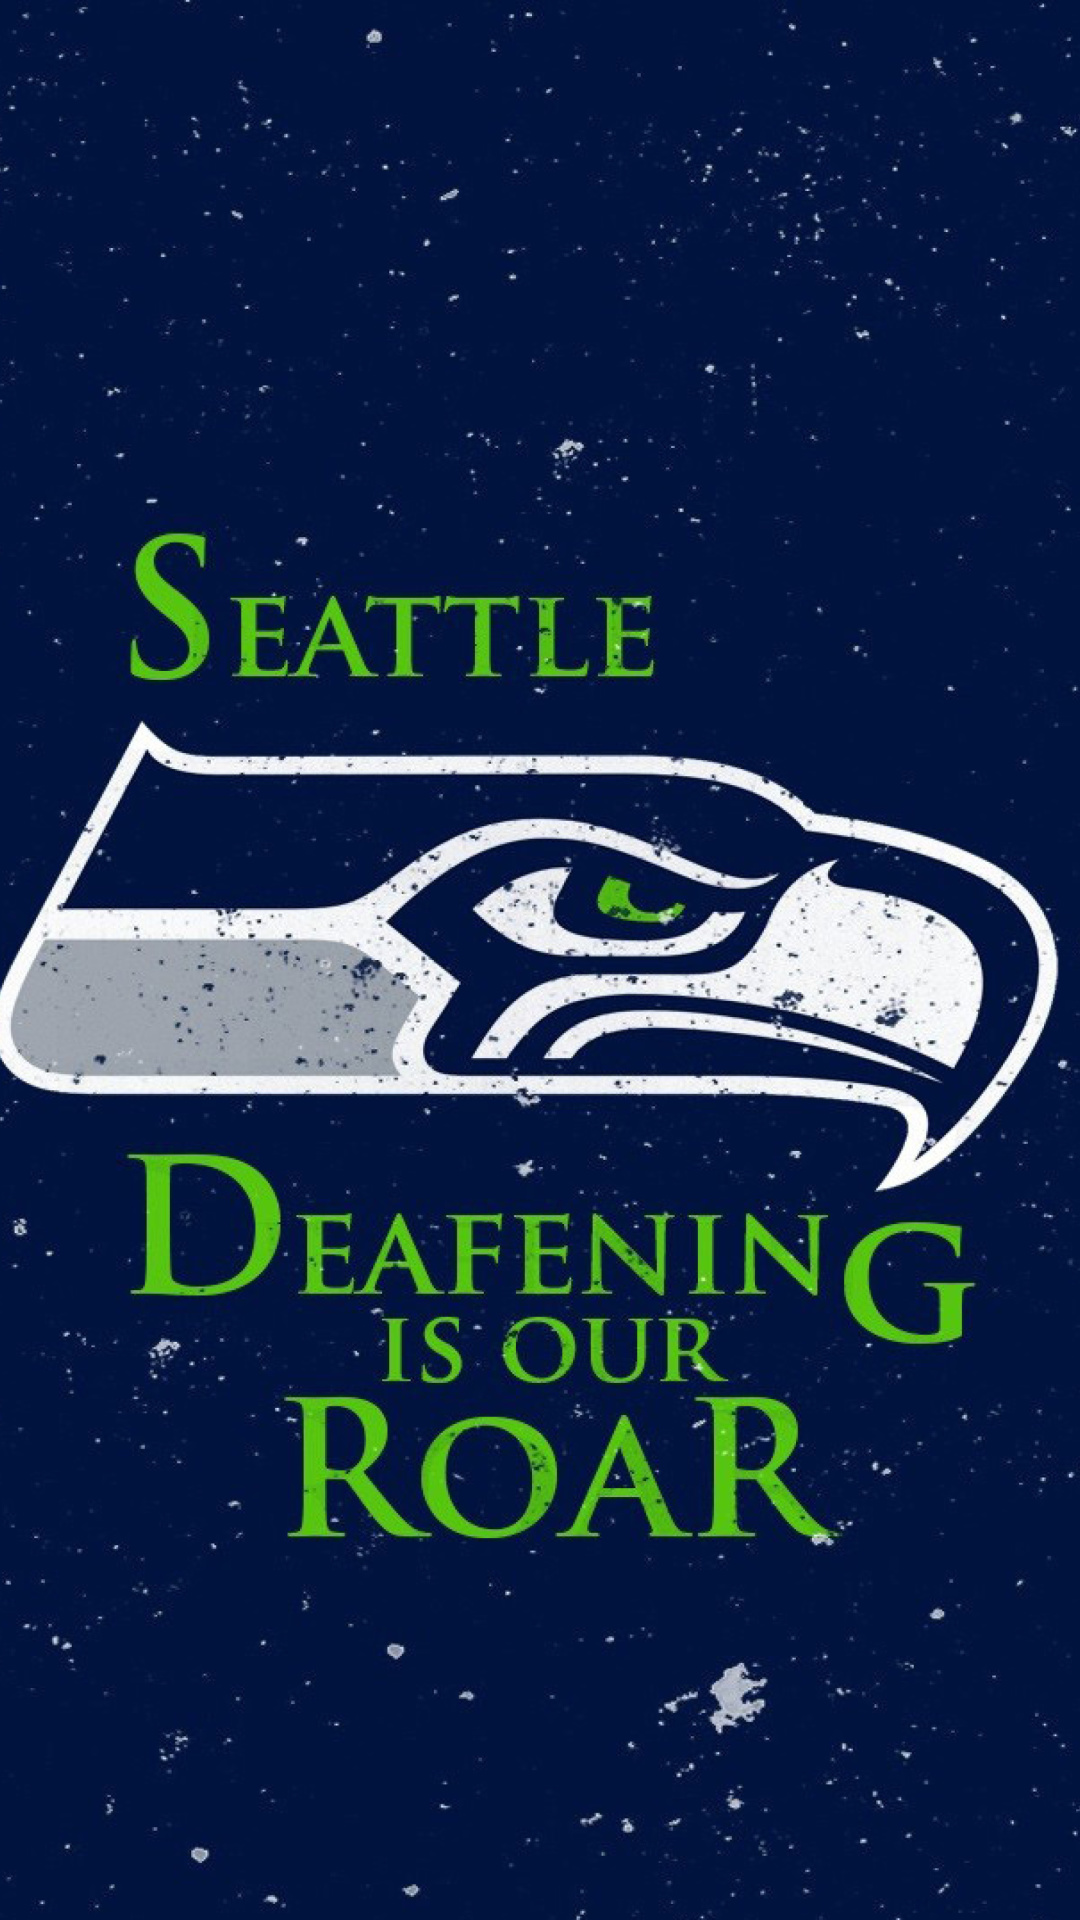 Seattle Seahawks wallpaper 1080x1920